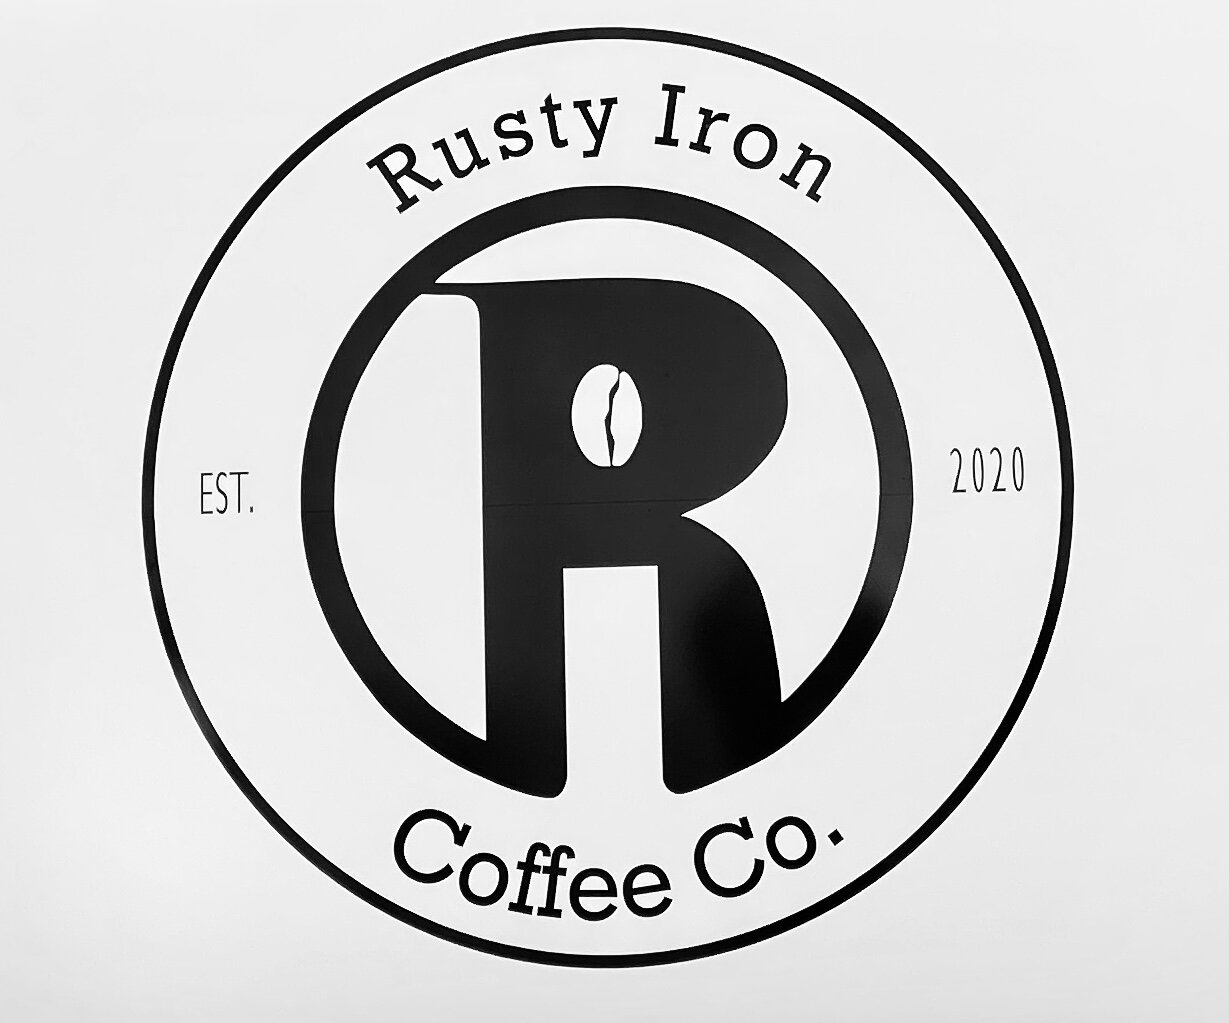 Rusty Iron Coffee Co